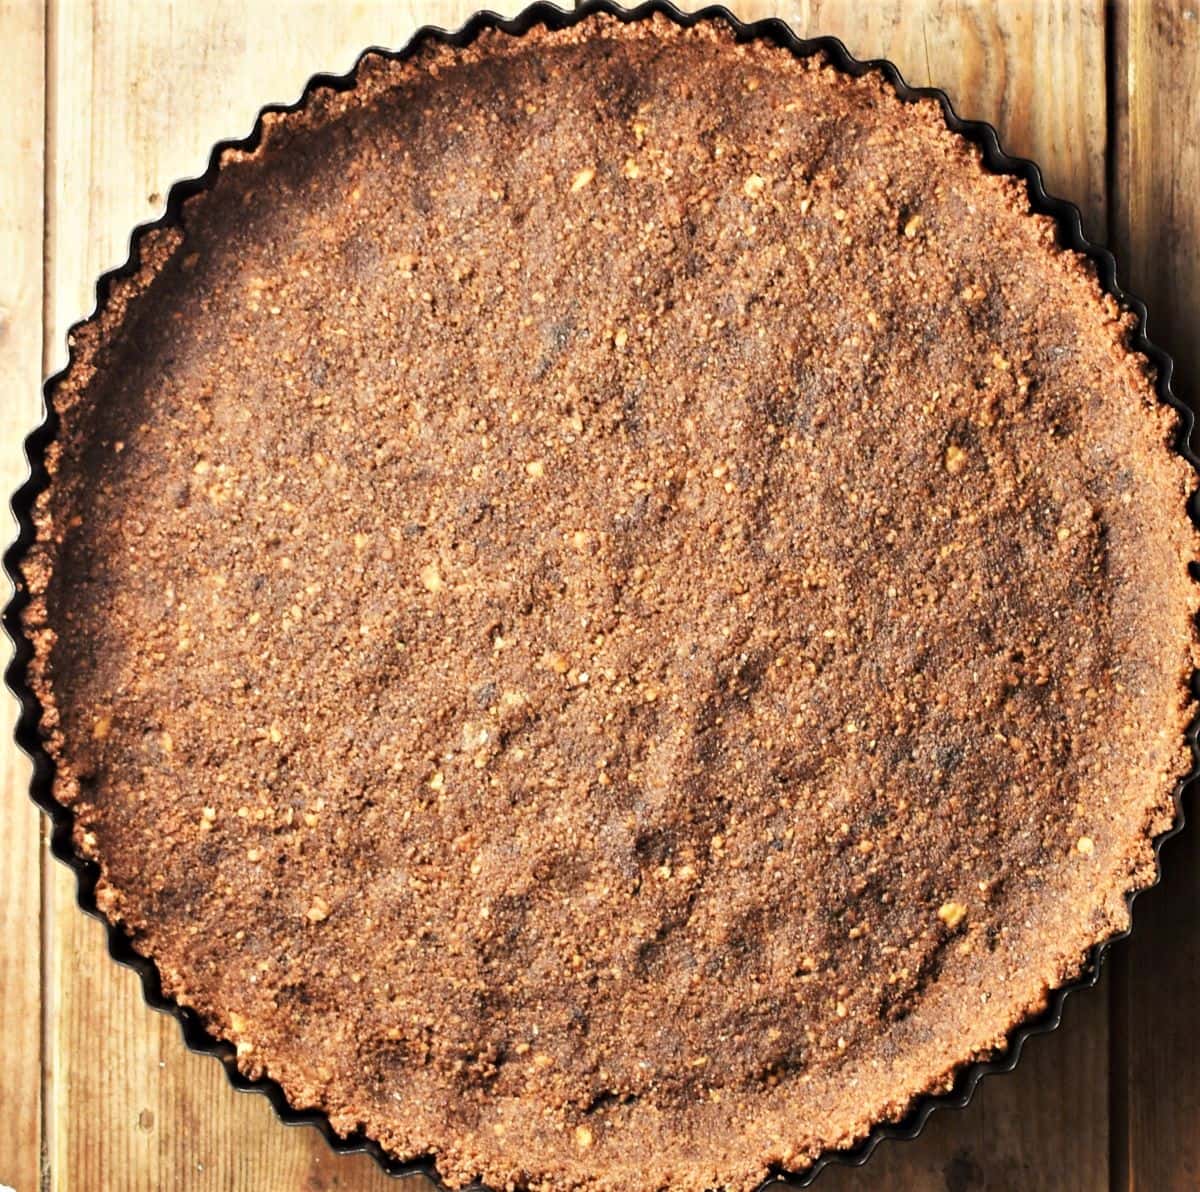 Chocolate tart base in round pan.